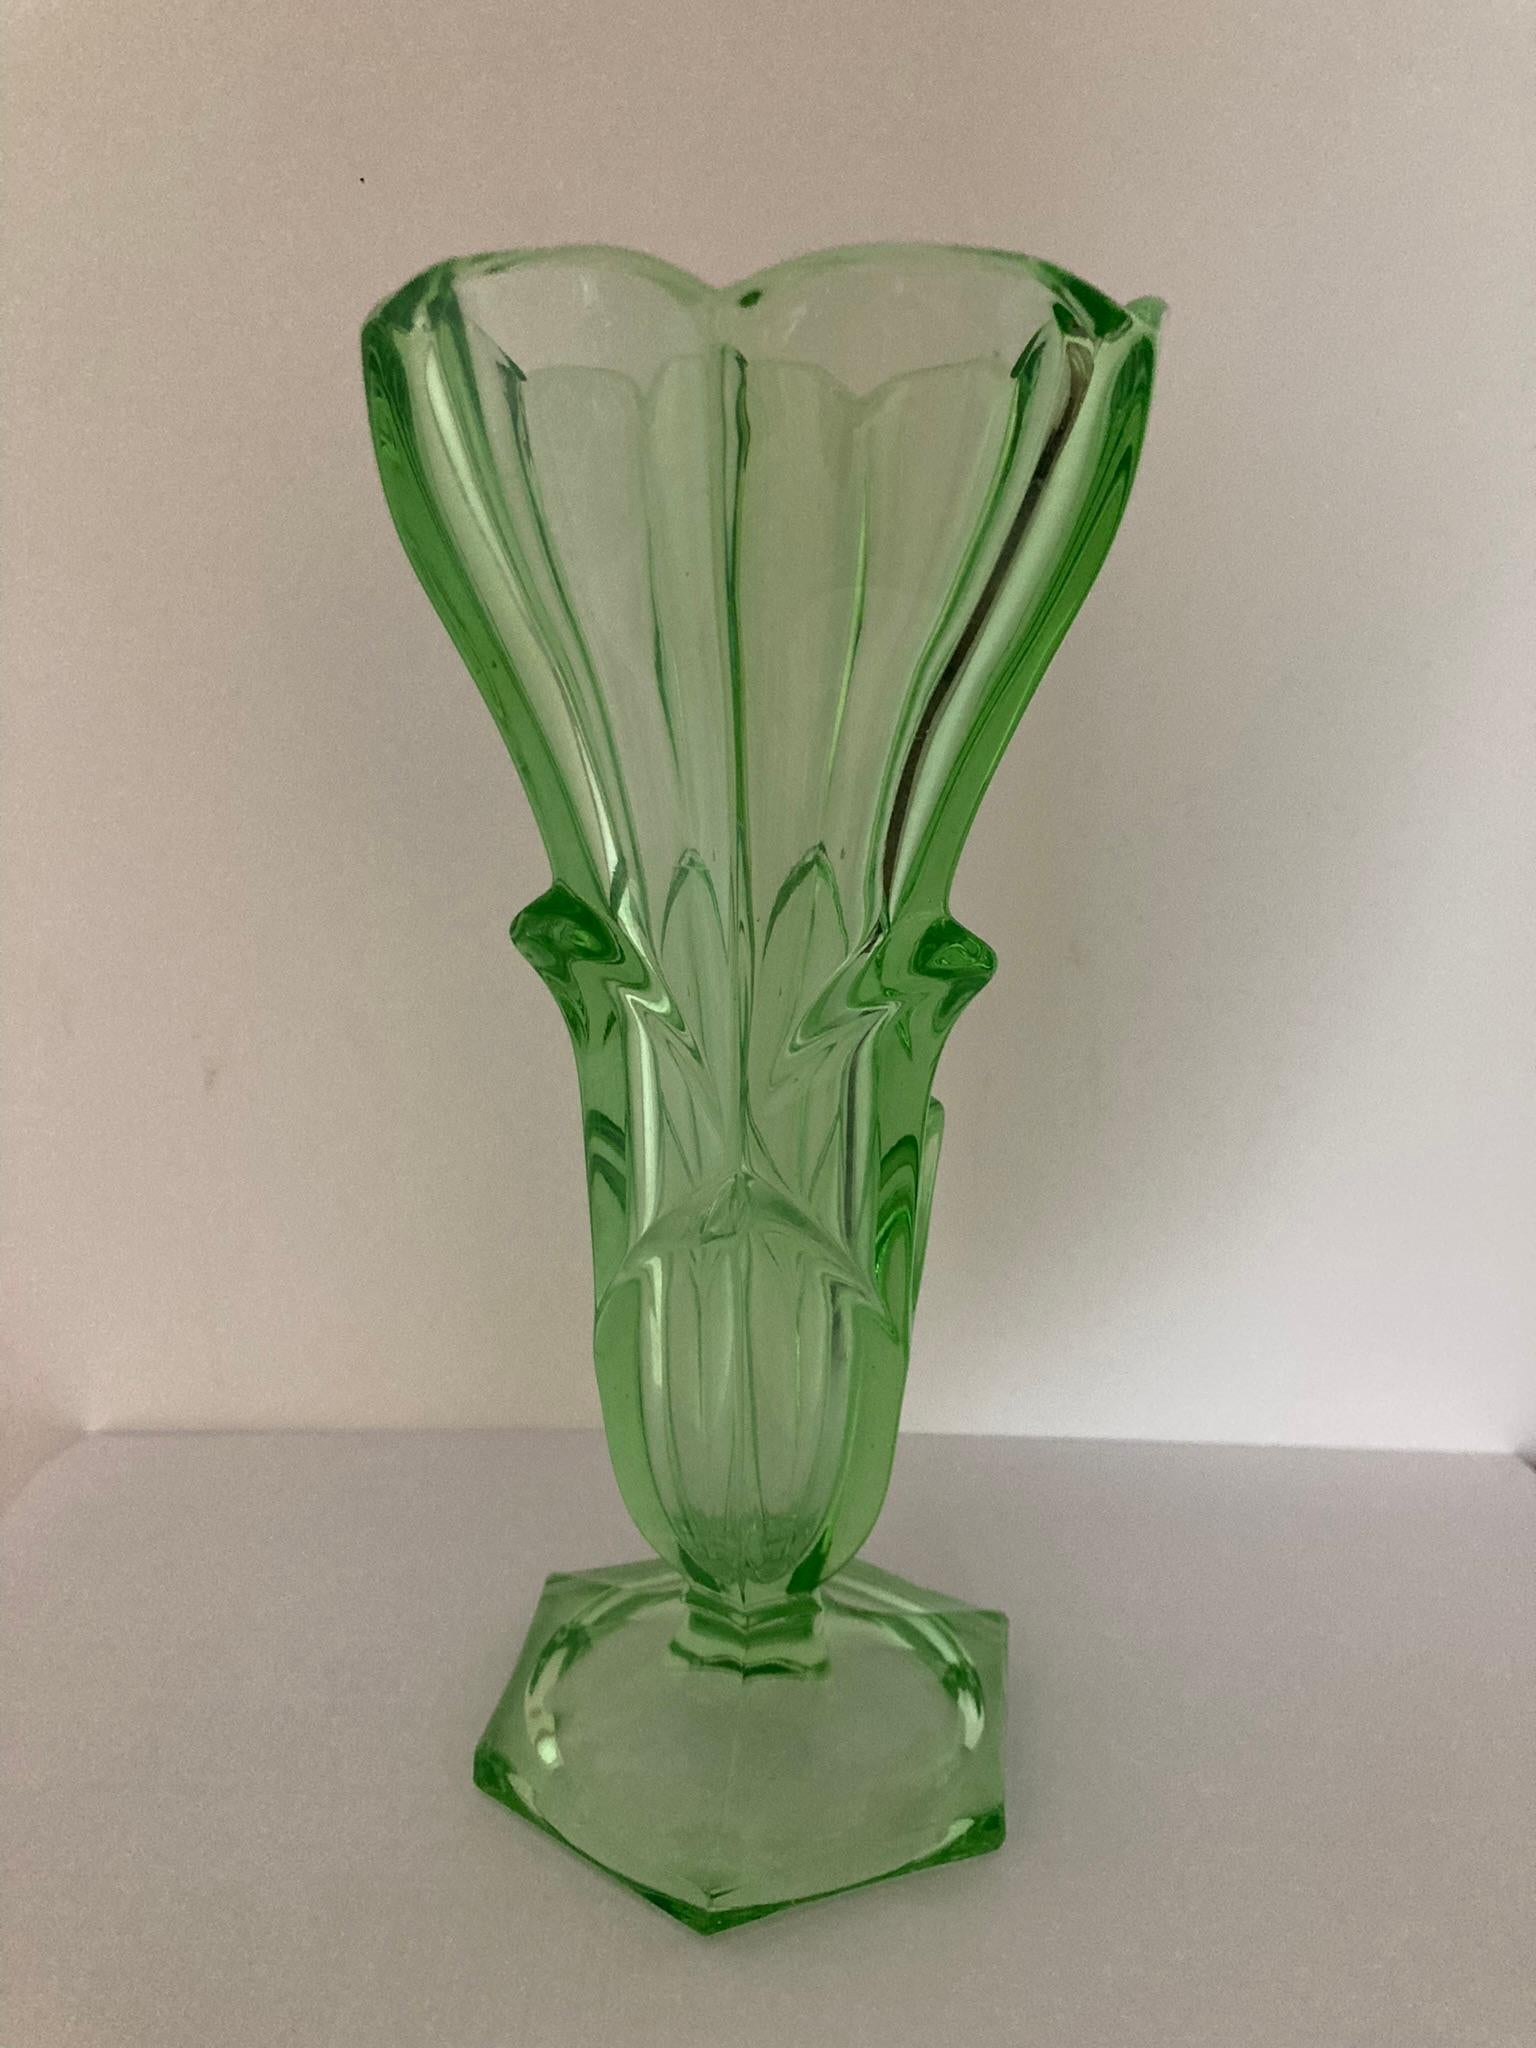 Un vase exquis en verre uranium vert avec un motif floral captivant. Fabriqué avec précision, cet élégant vase ajoute une touche de sophistication à tout espace. La teinte verte vibrante complète le motif floral complexe, créant un attrait visuel